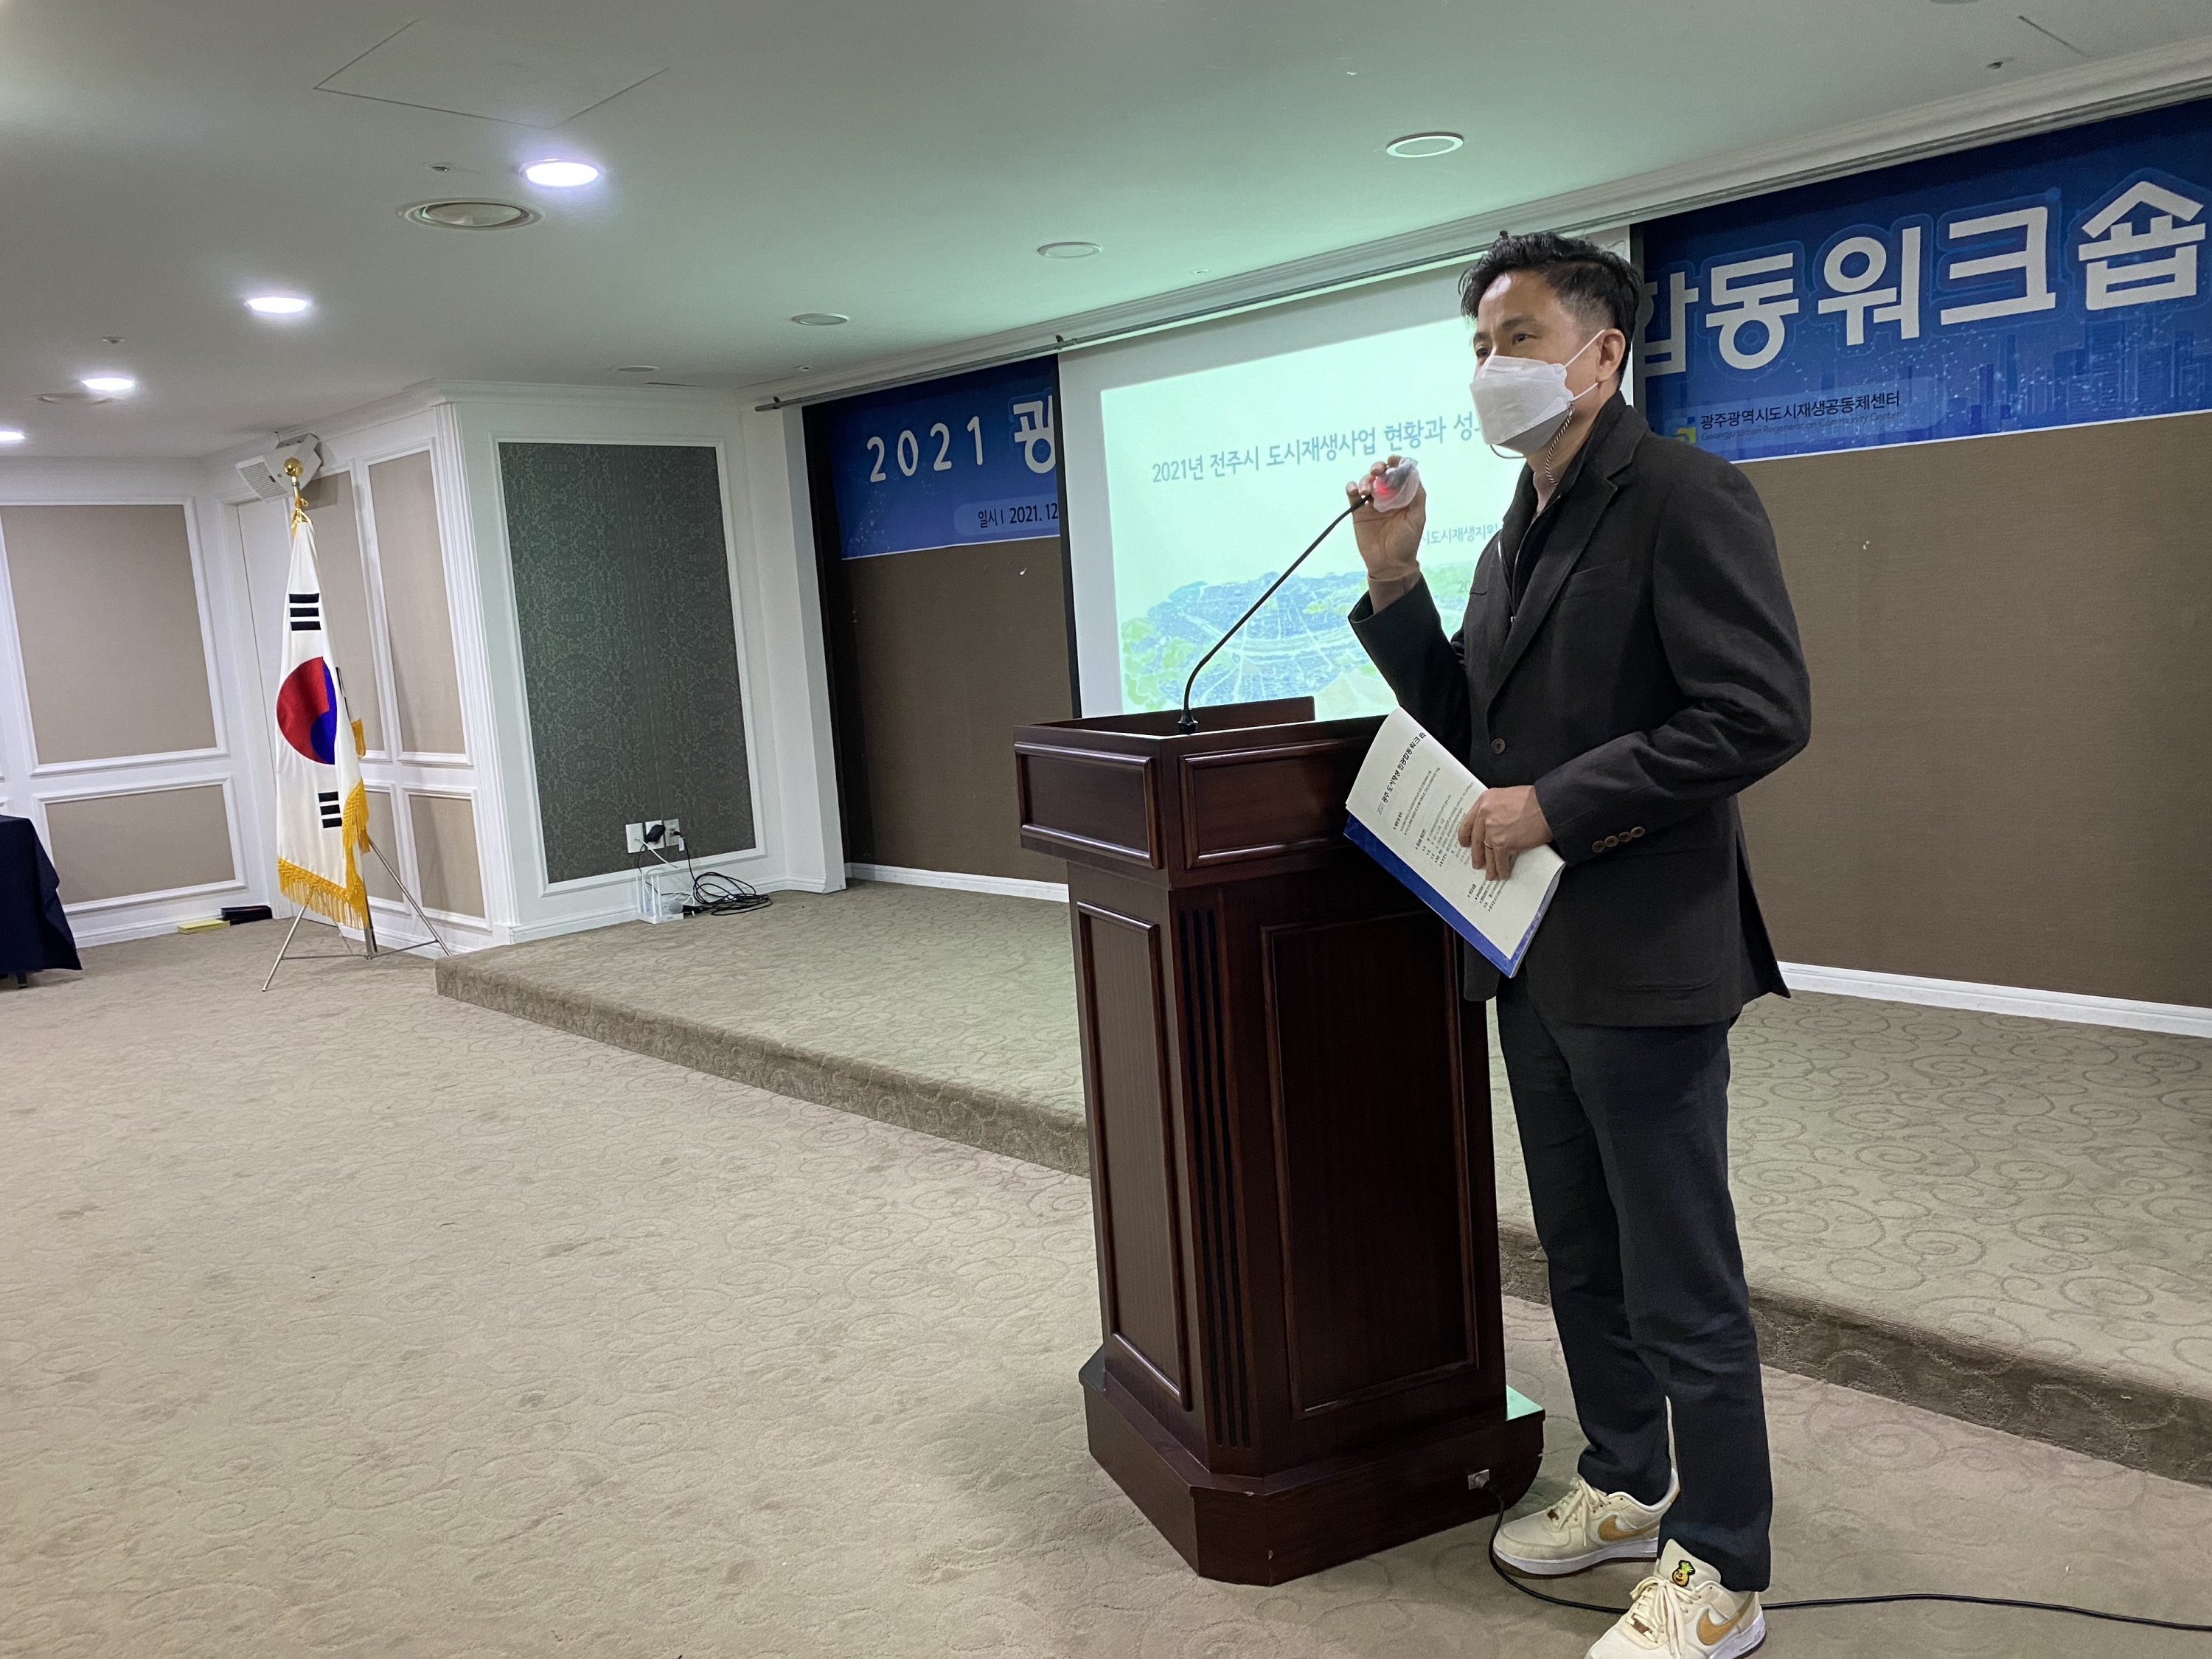 2021 광주 도시재생 민관합동워크숍